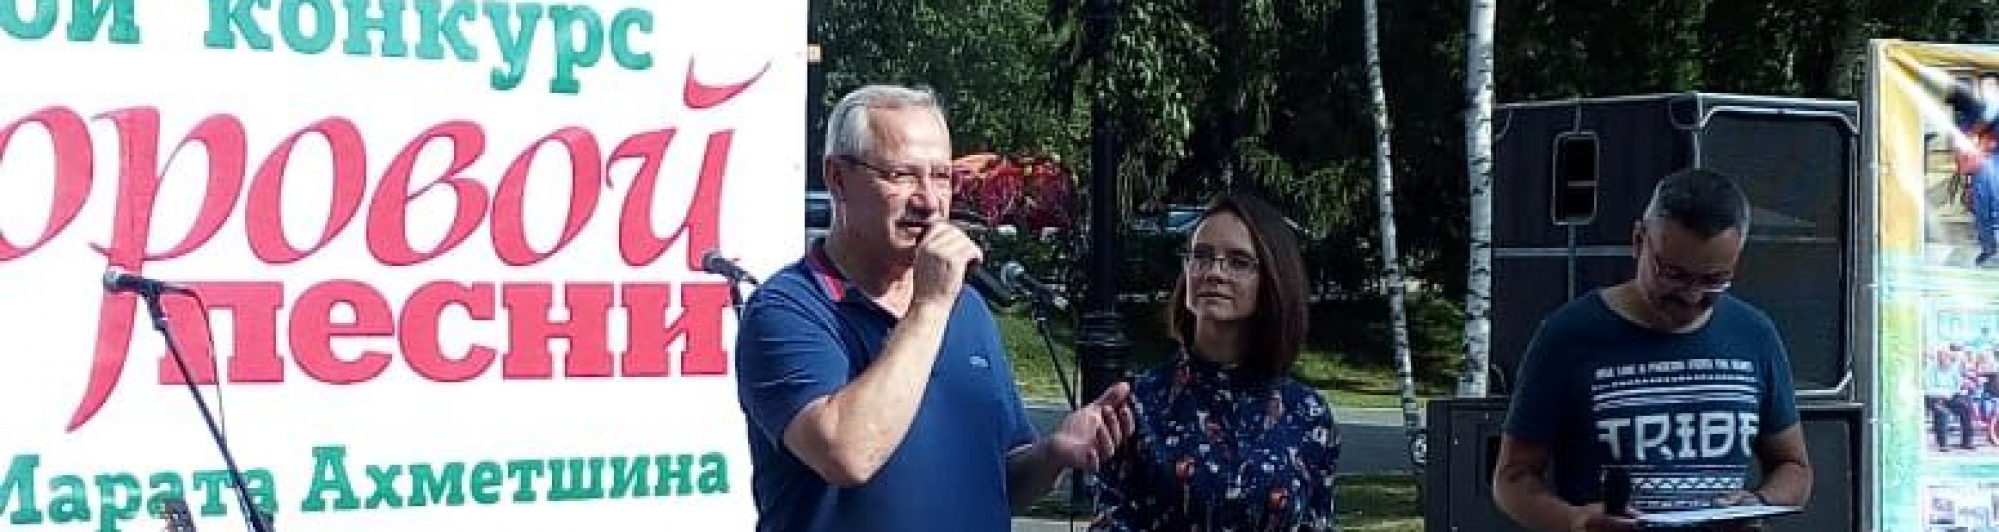 Алексей Балановский поприветствовал участников конкурса дворовой песни